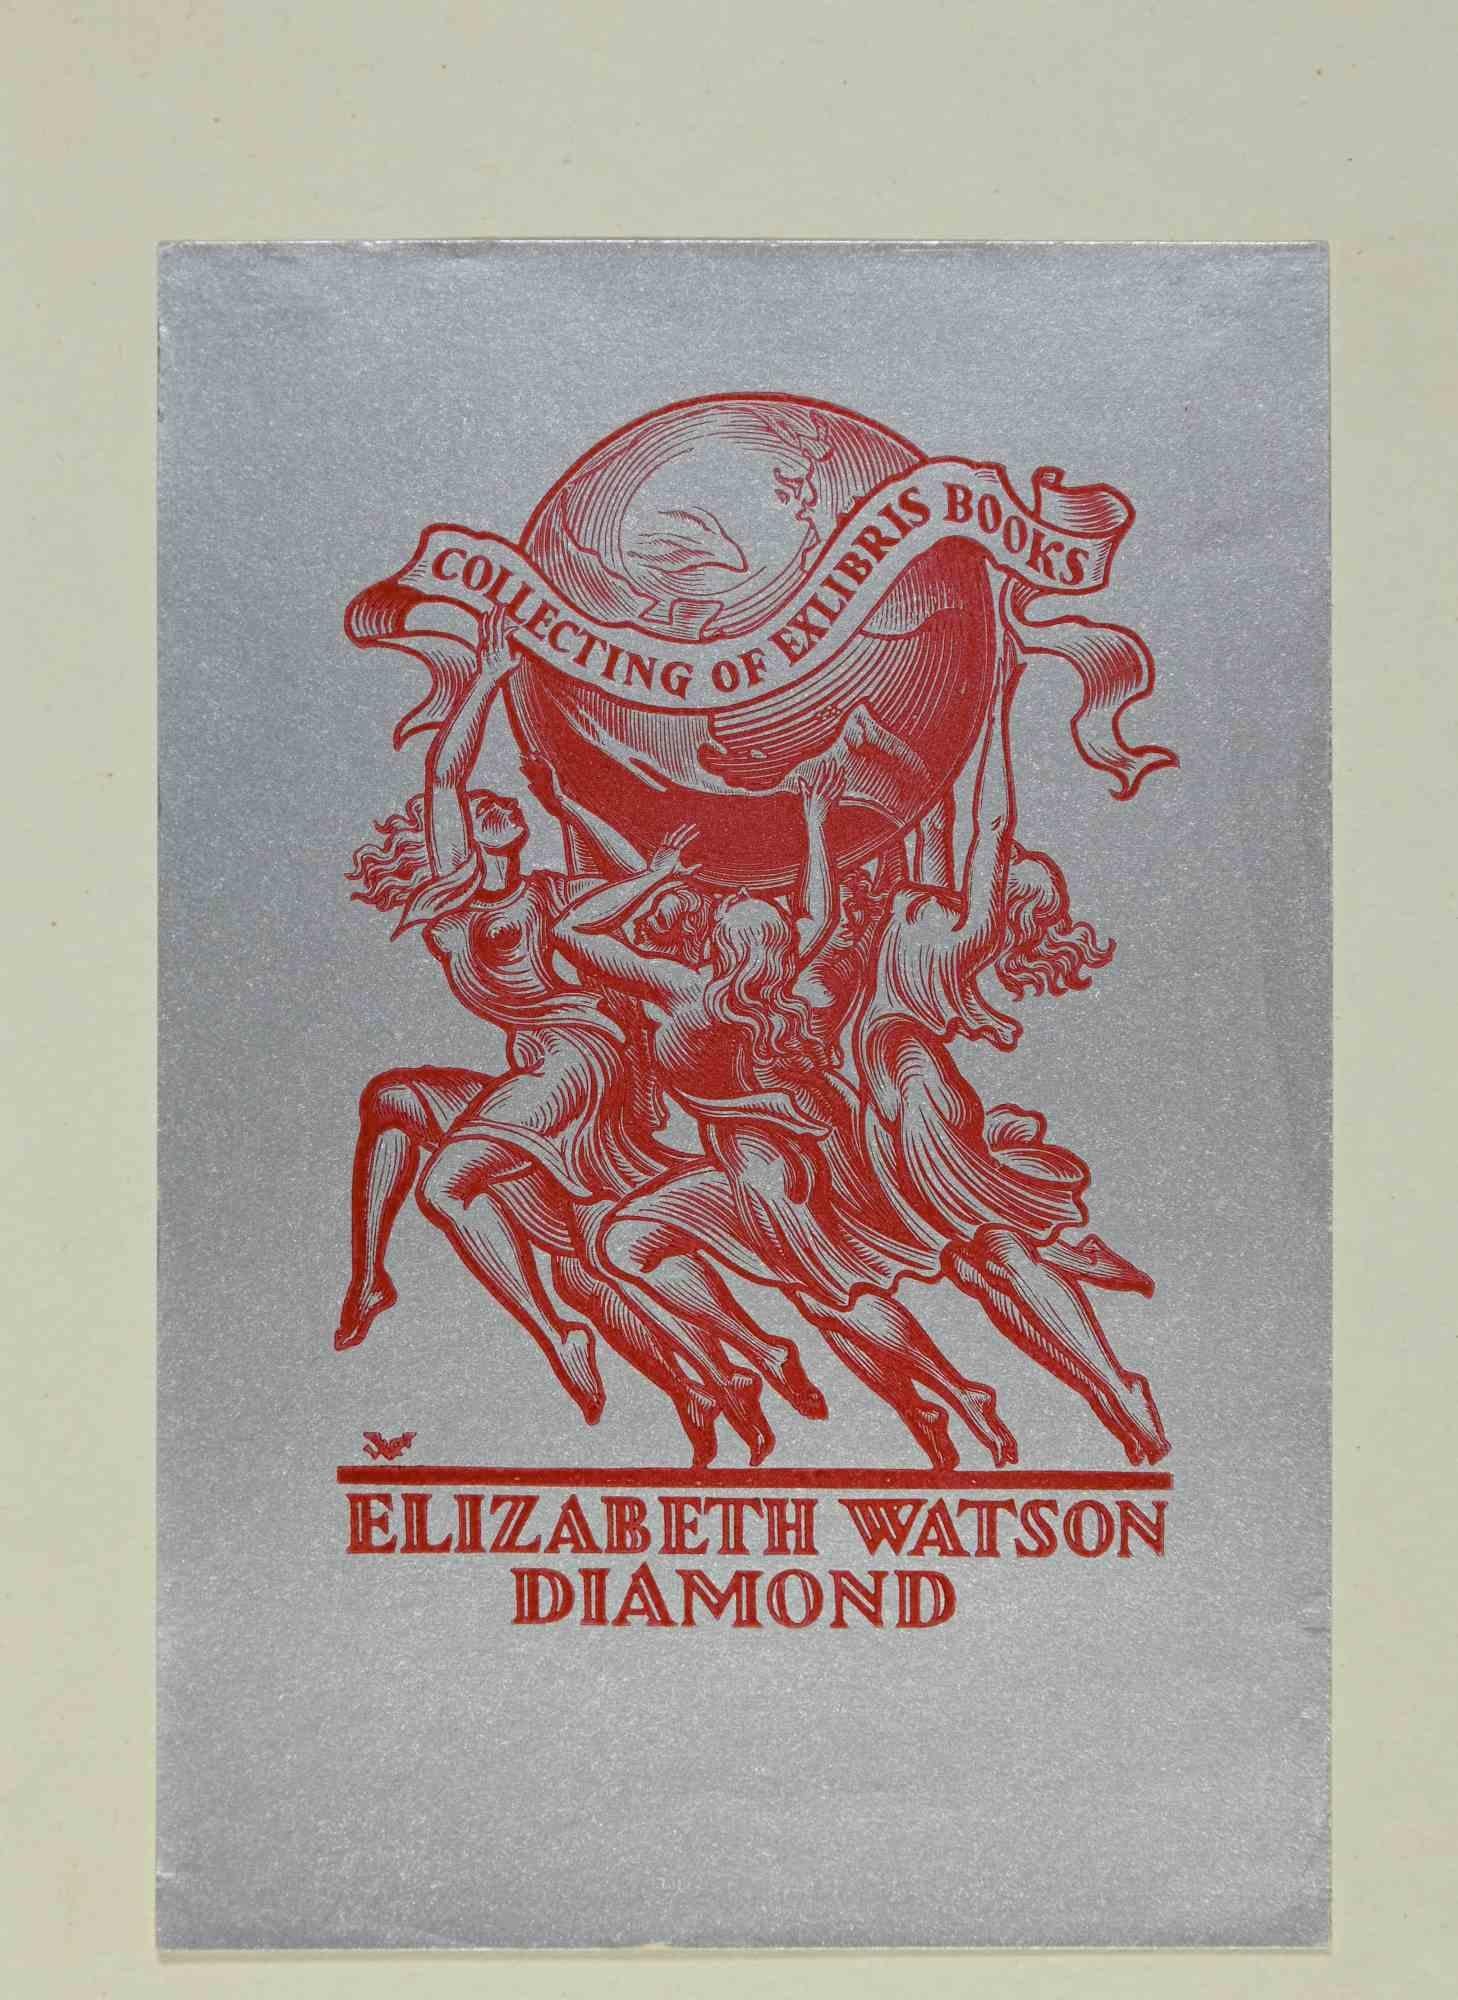 Ex-Libris - Elizabeth Watson Diamond ist ein Kunstwerk des Künstlers Valentin Le Campion aus den 1930er Jahren.

Siebdruck auf Papier. Handsigniert auf der Rückseite.

Das Werk ist auf elfenbeinfarbenen Karton geklebt. Gesamtabmessungen: 18,5 x 14